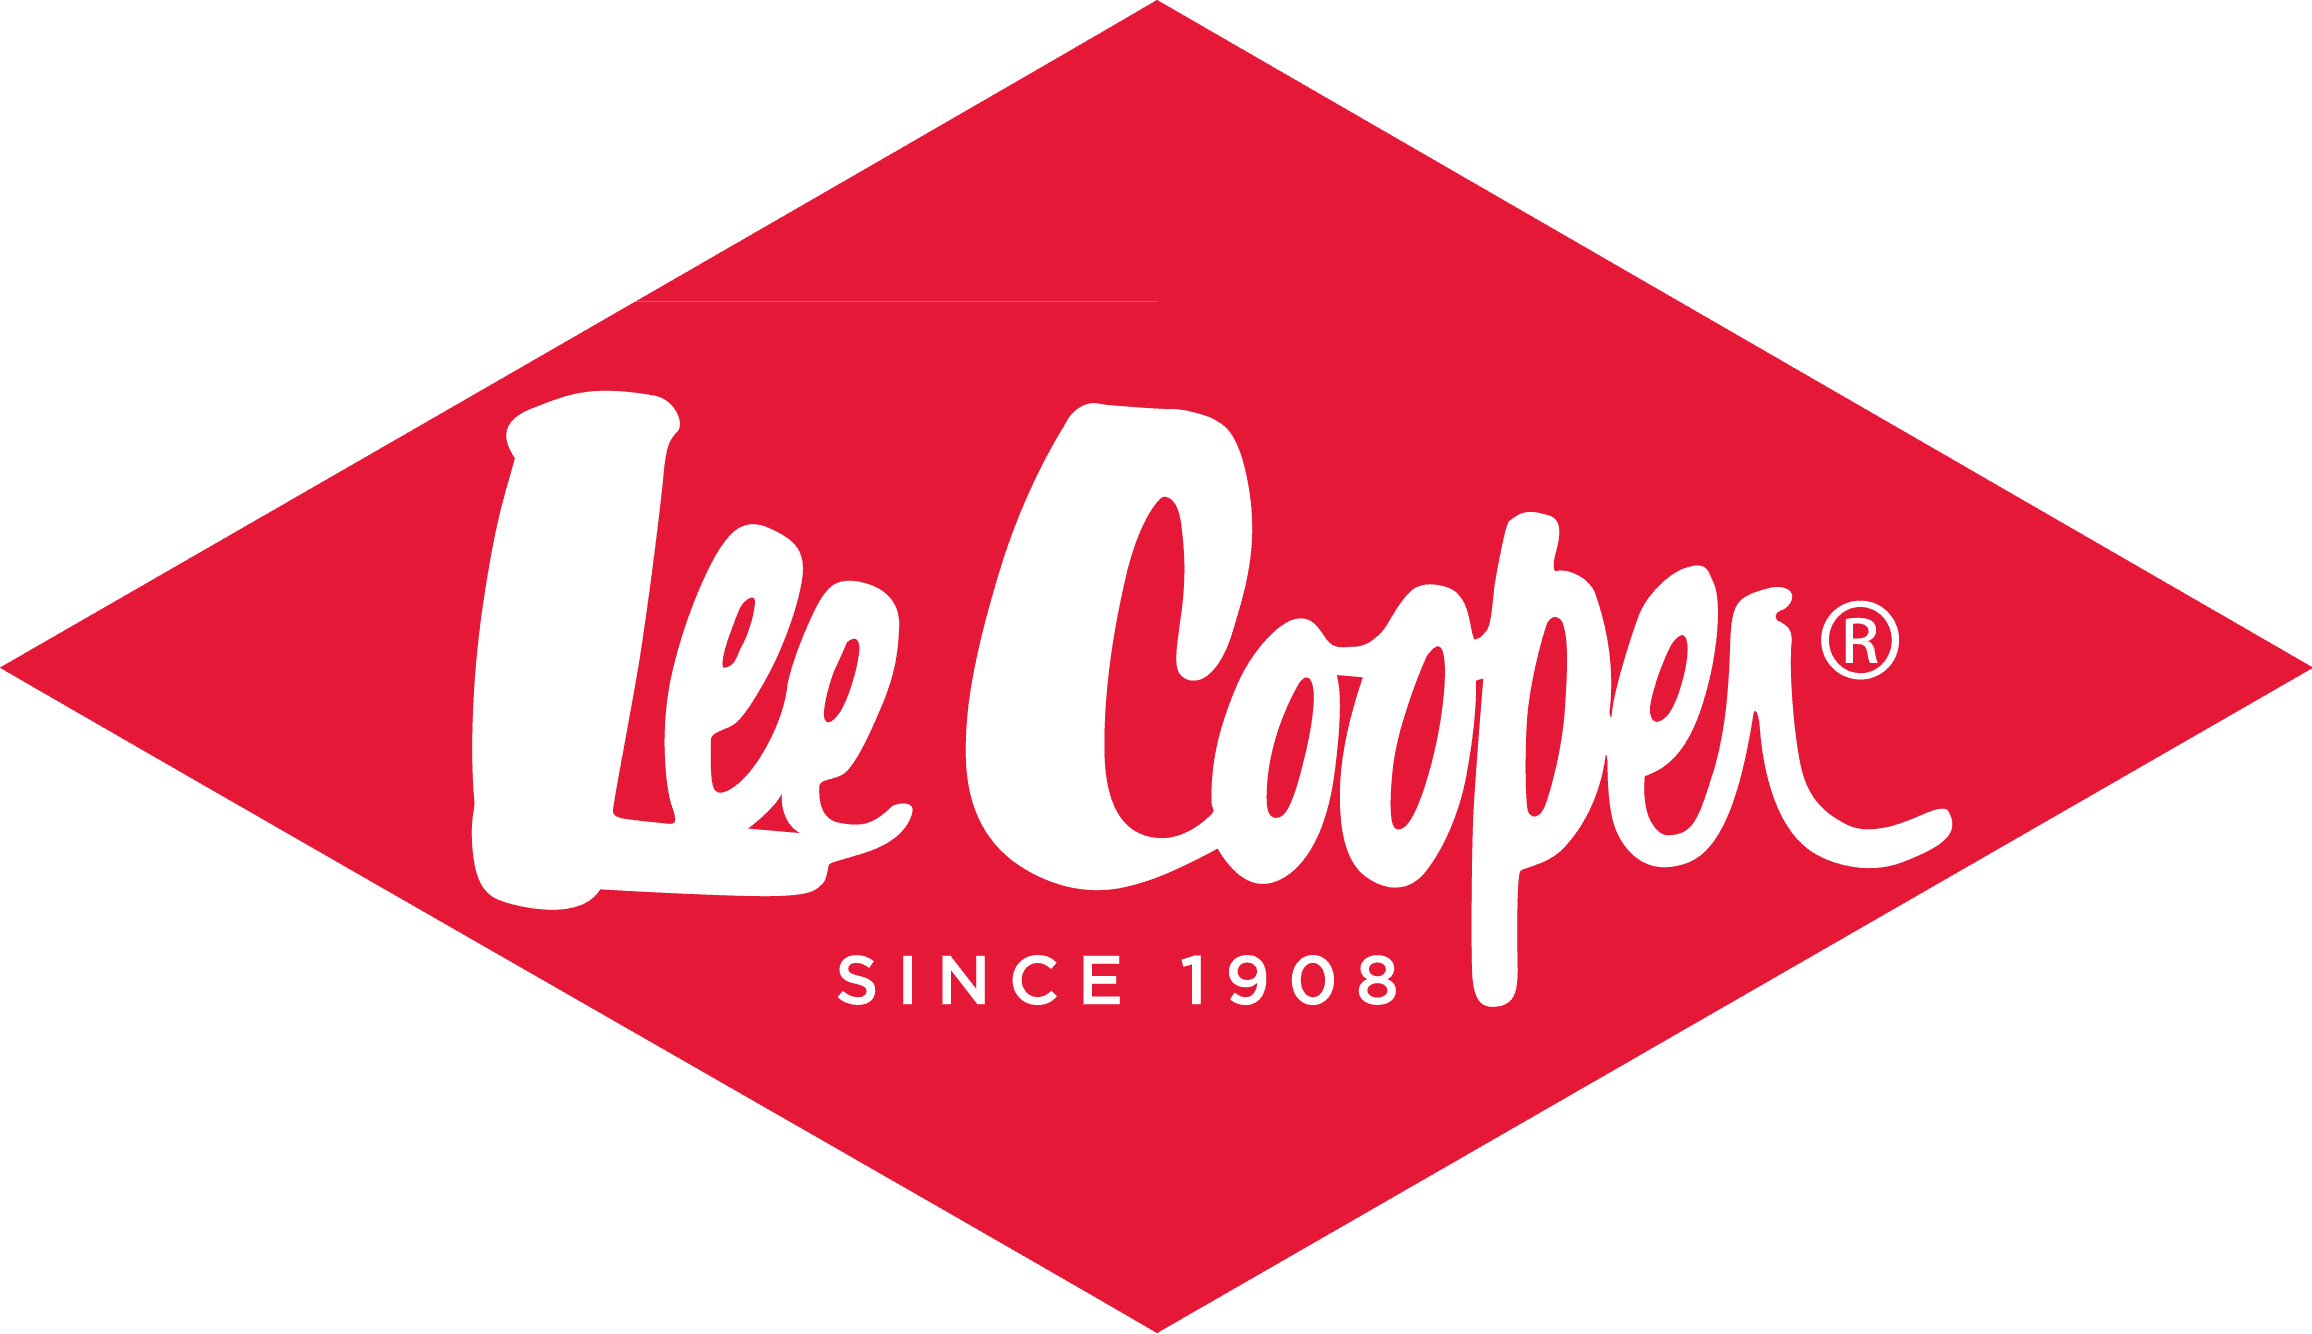 Lee-Cooper-logo